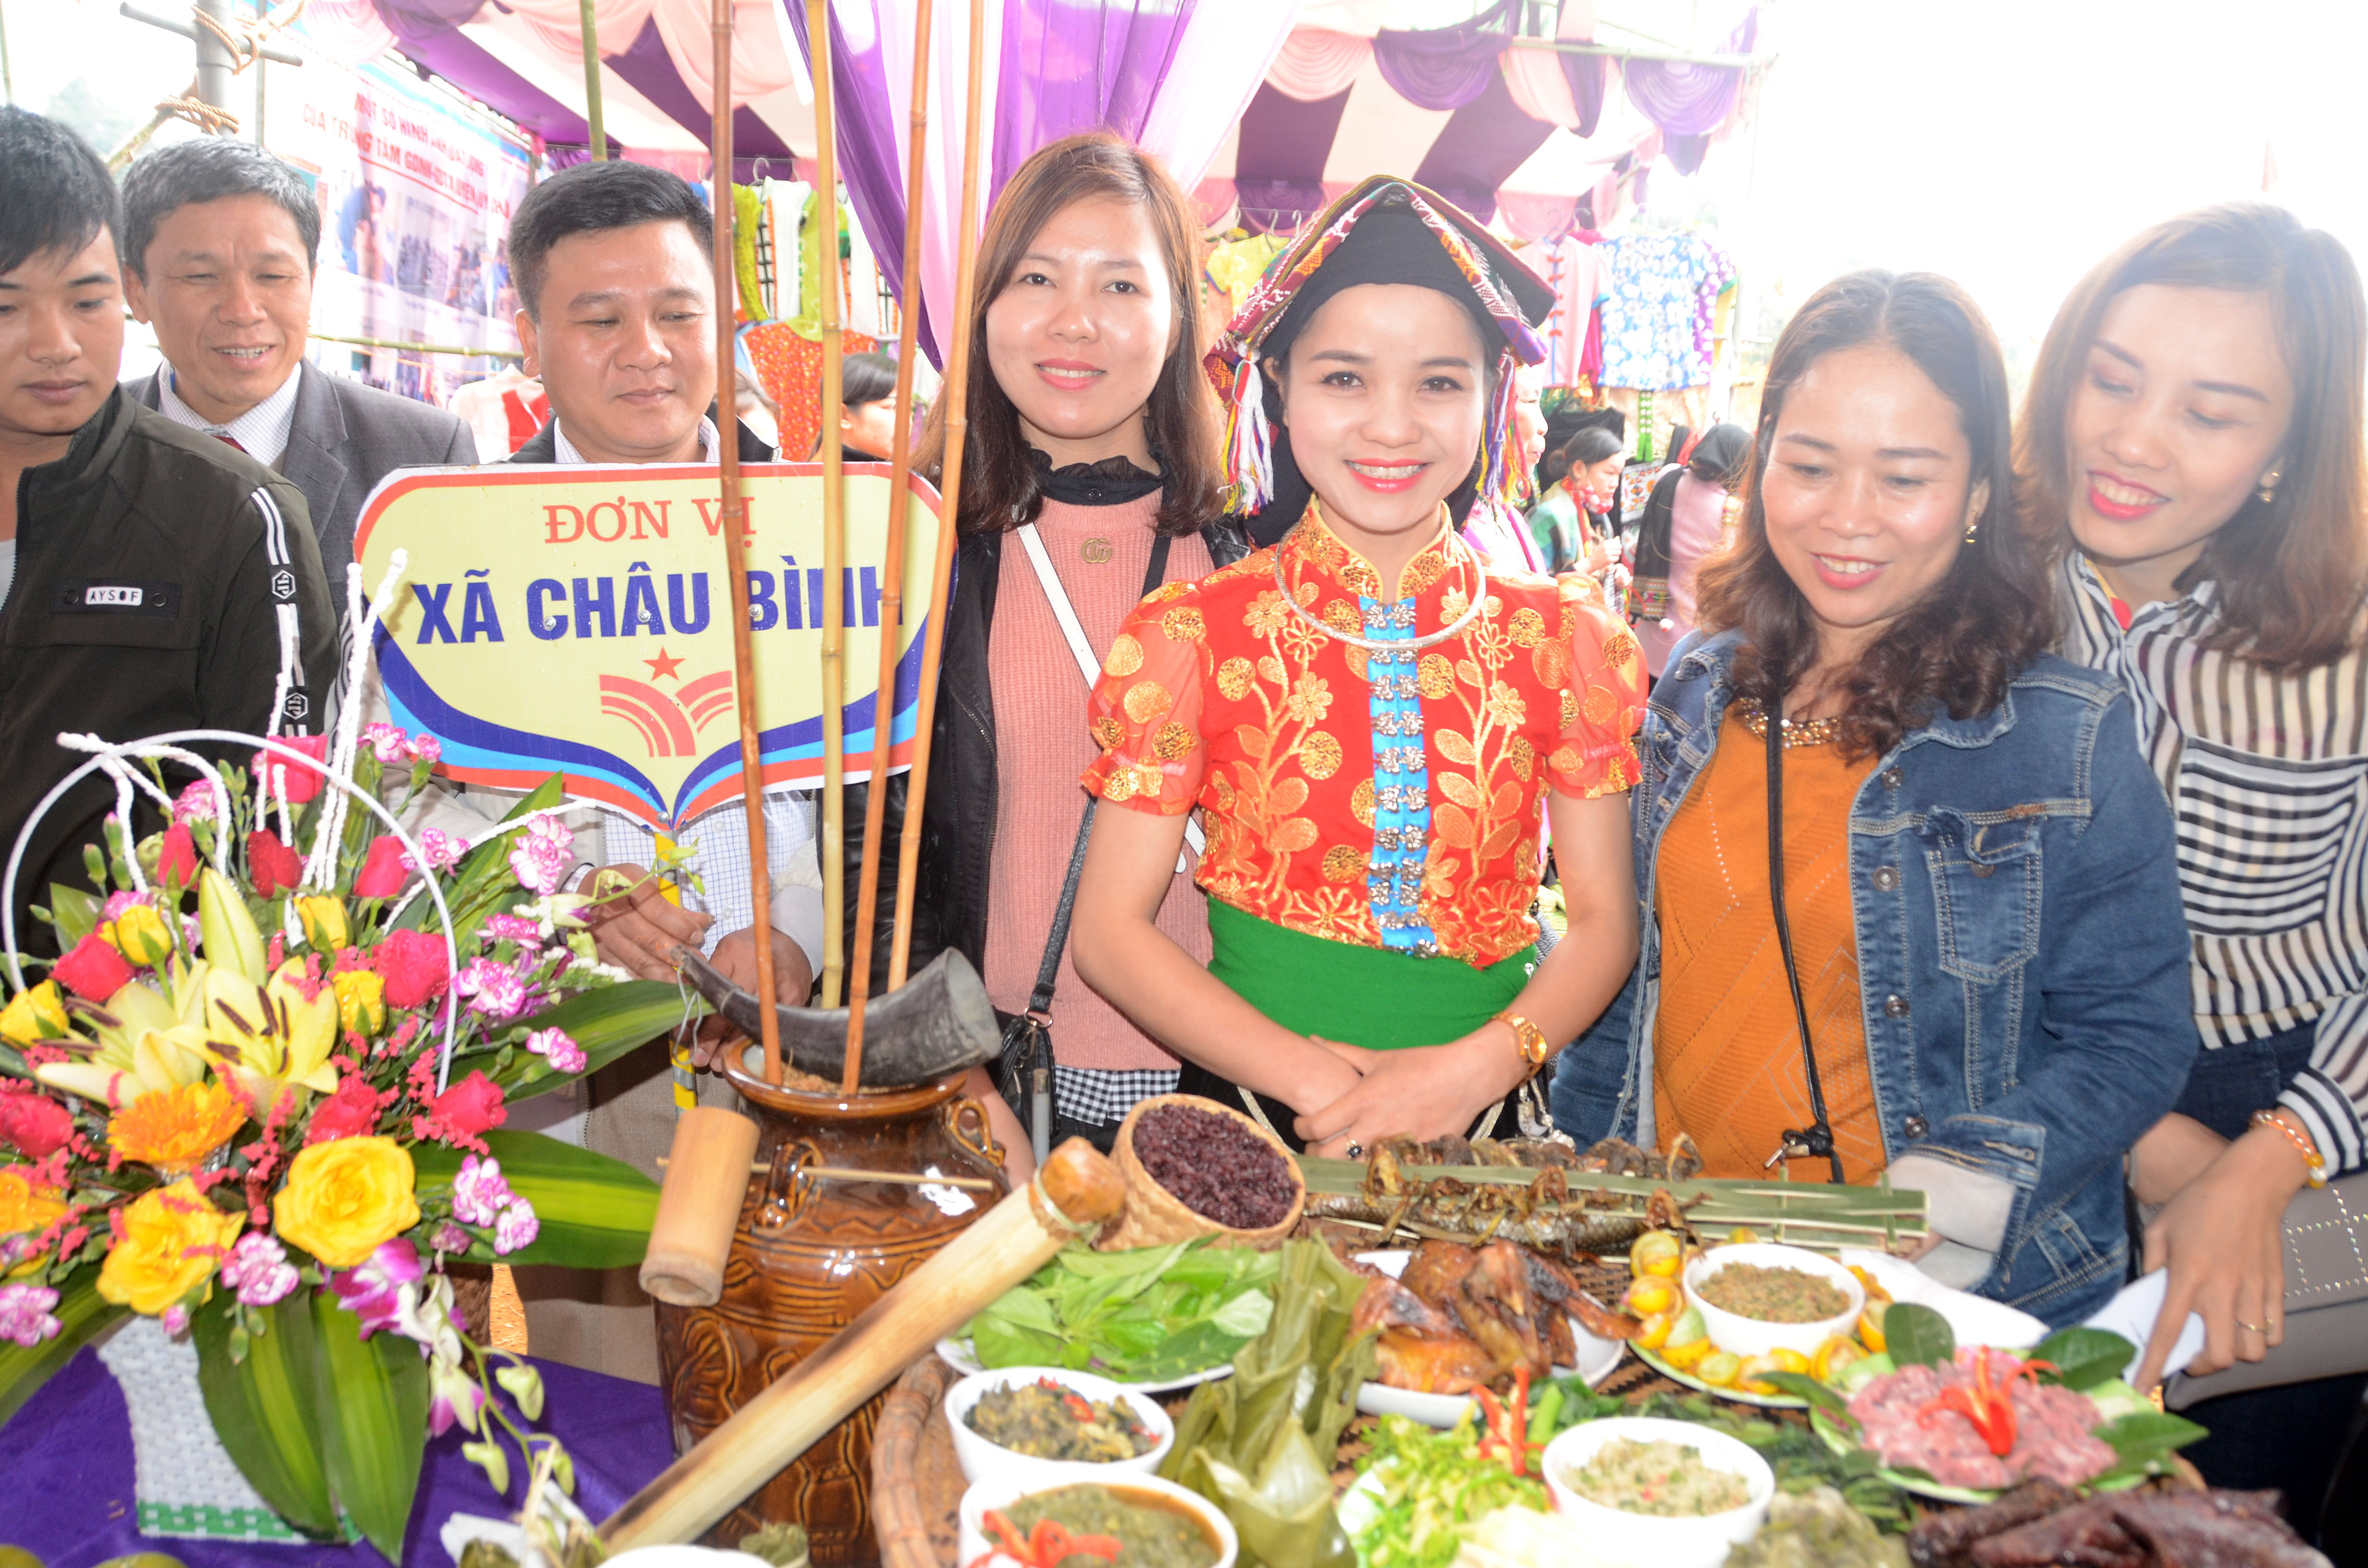 Thi văn hóa ẩm thực ở Lễ hội Hang Bua 2018. Các mâm dự thi phong phú các món ăn thơm ngon, được trình bày đẹp mắt. Ảnh: Thành Chung